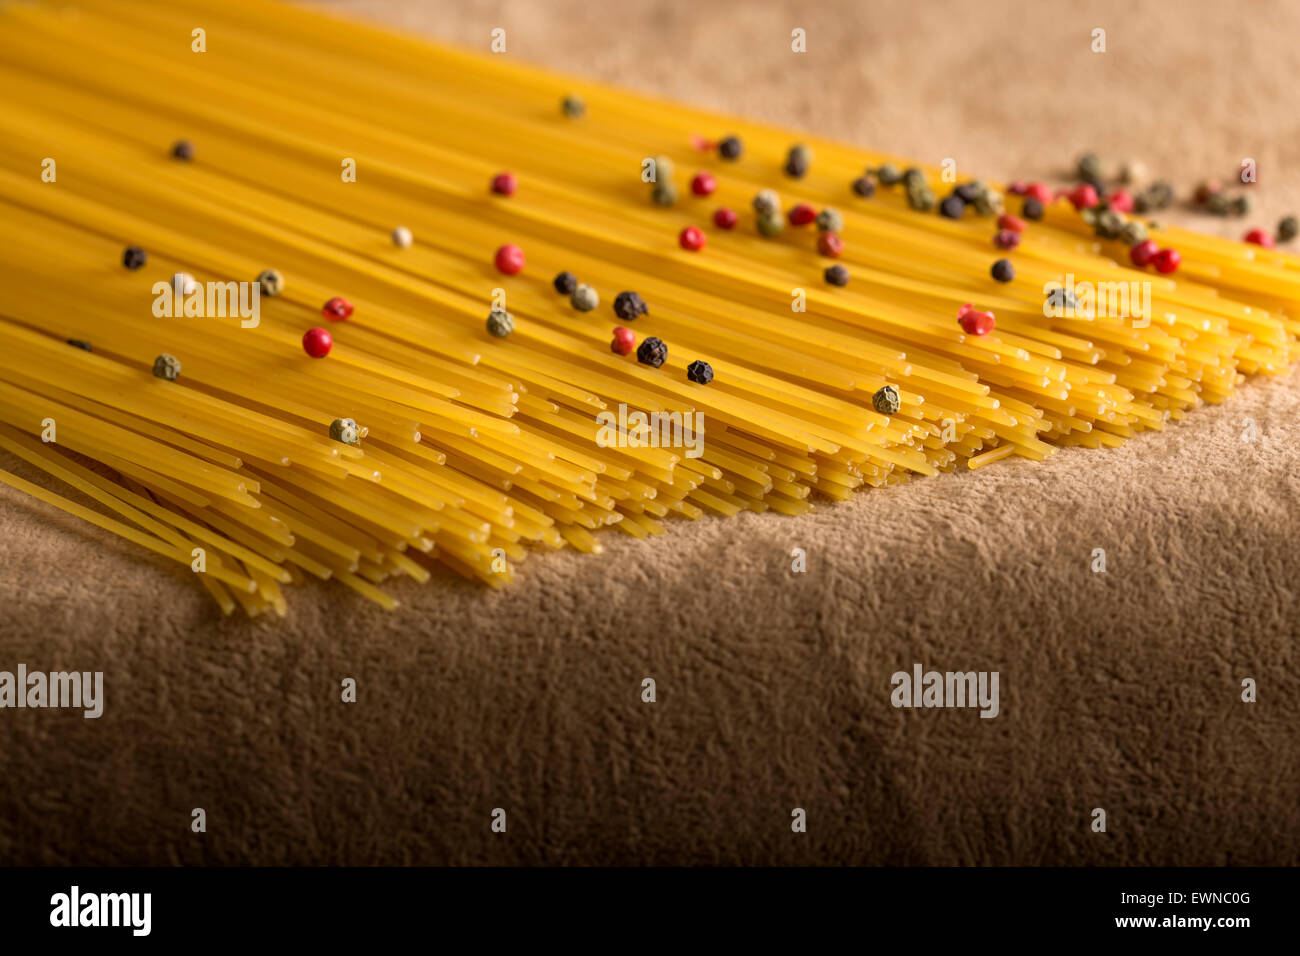 Rohe Spagetti mit Pfefferkörnern auf braunem Hintergrund Stockfoto